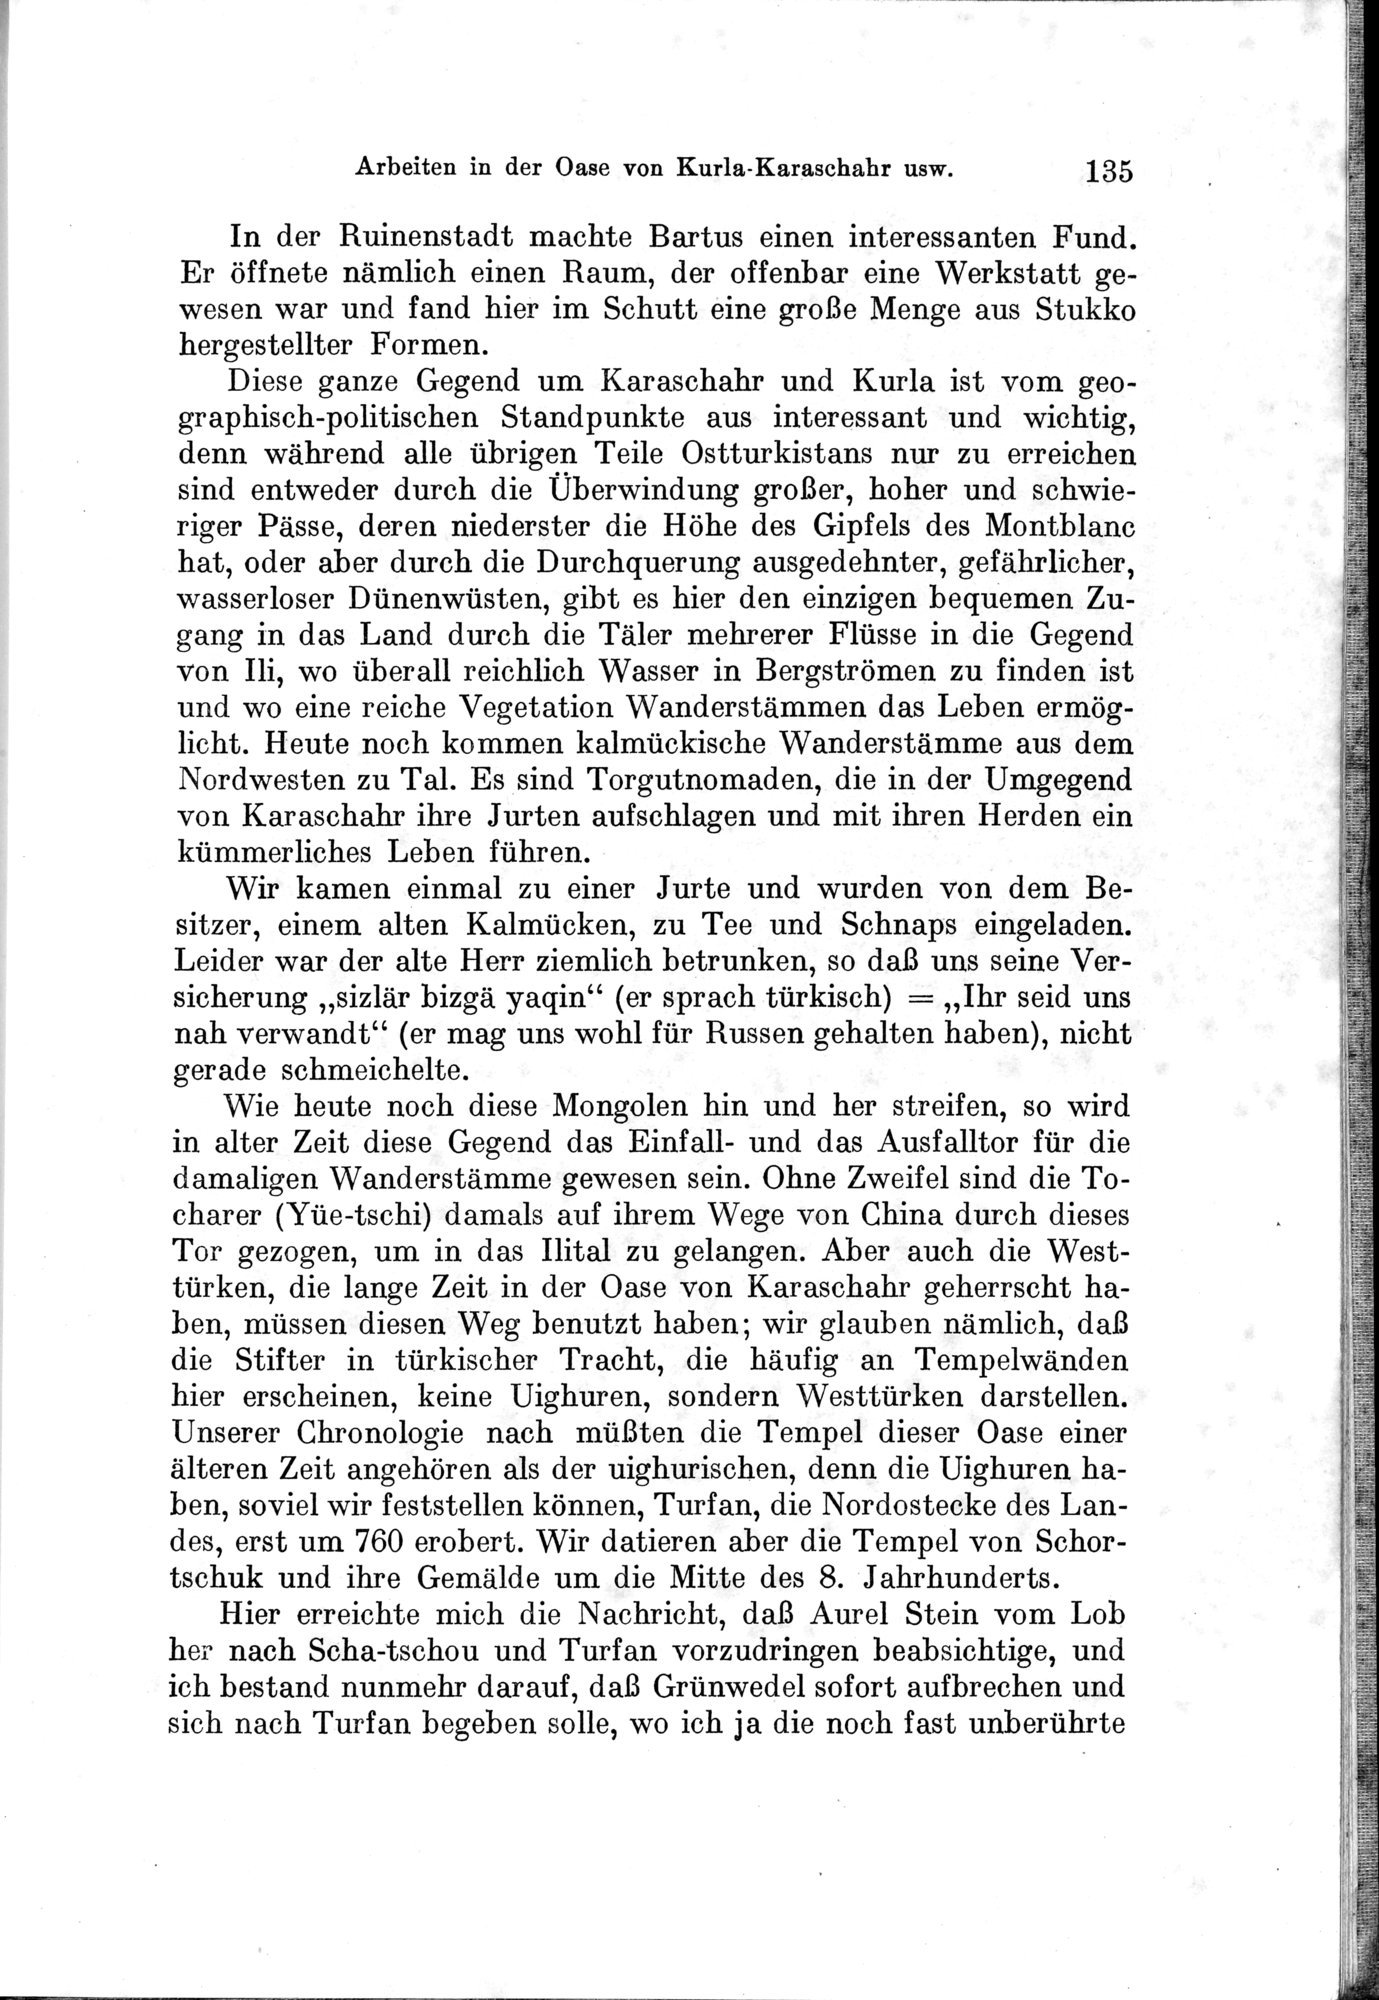 Auf Hellas Spuren in Ostturkistan : vol.1 / Page 193 (Grayscale High Resolution Image)